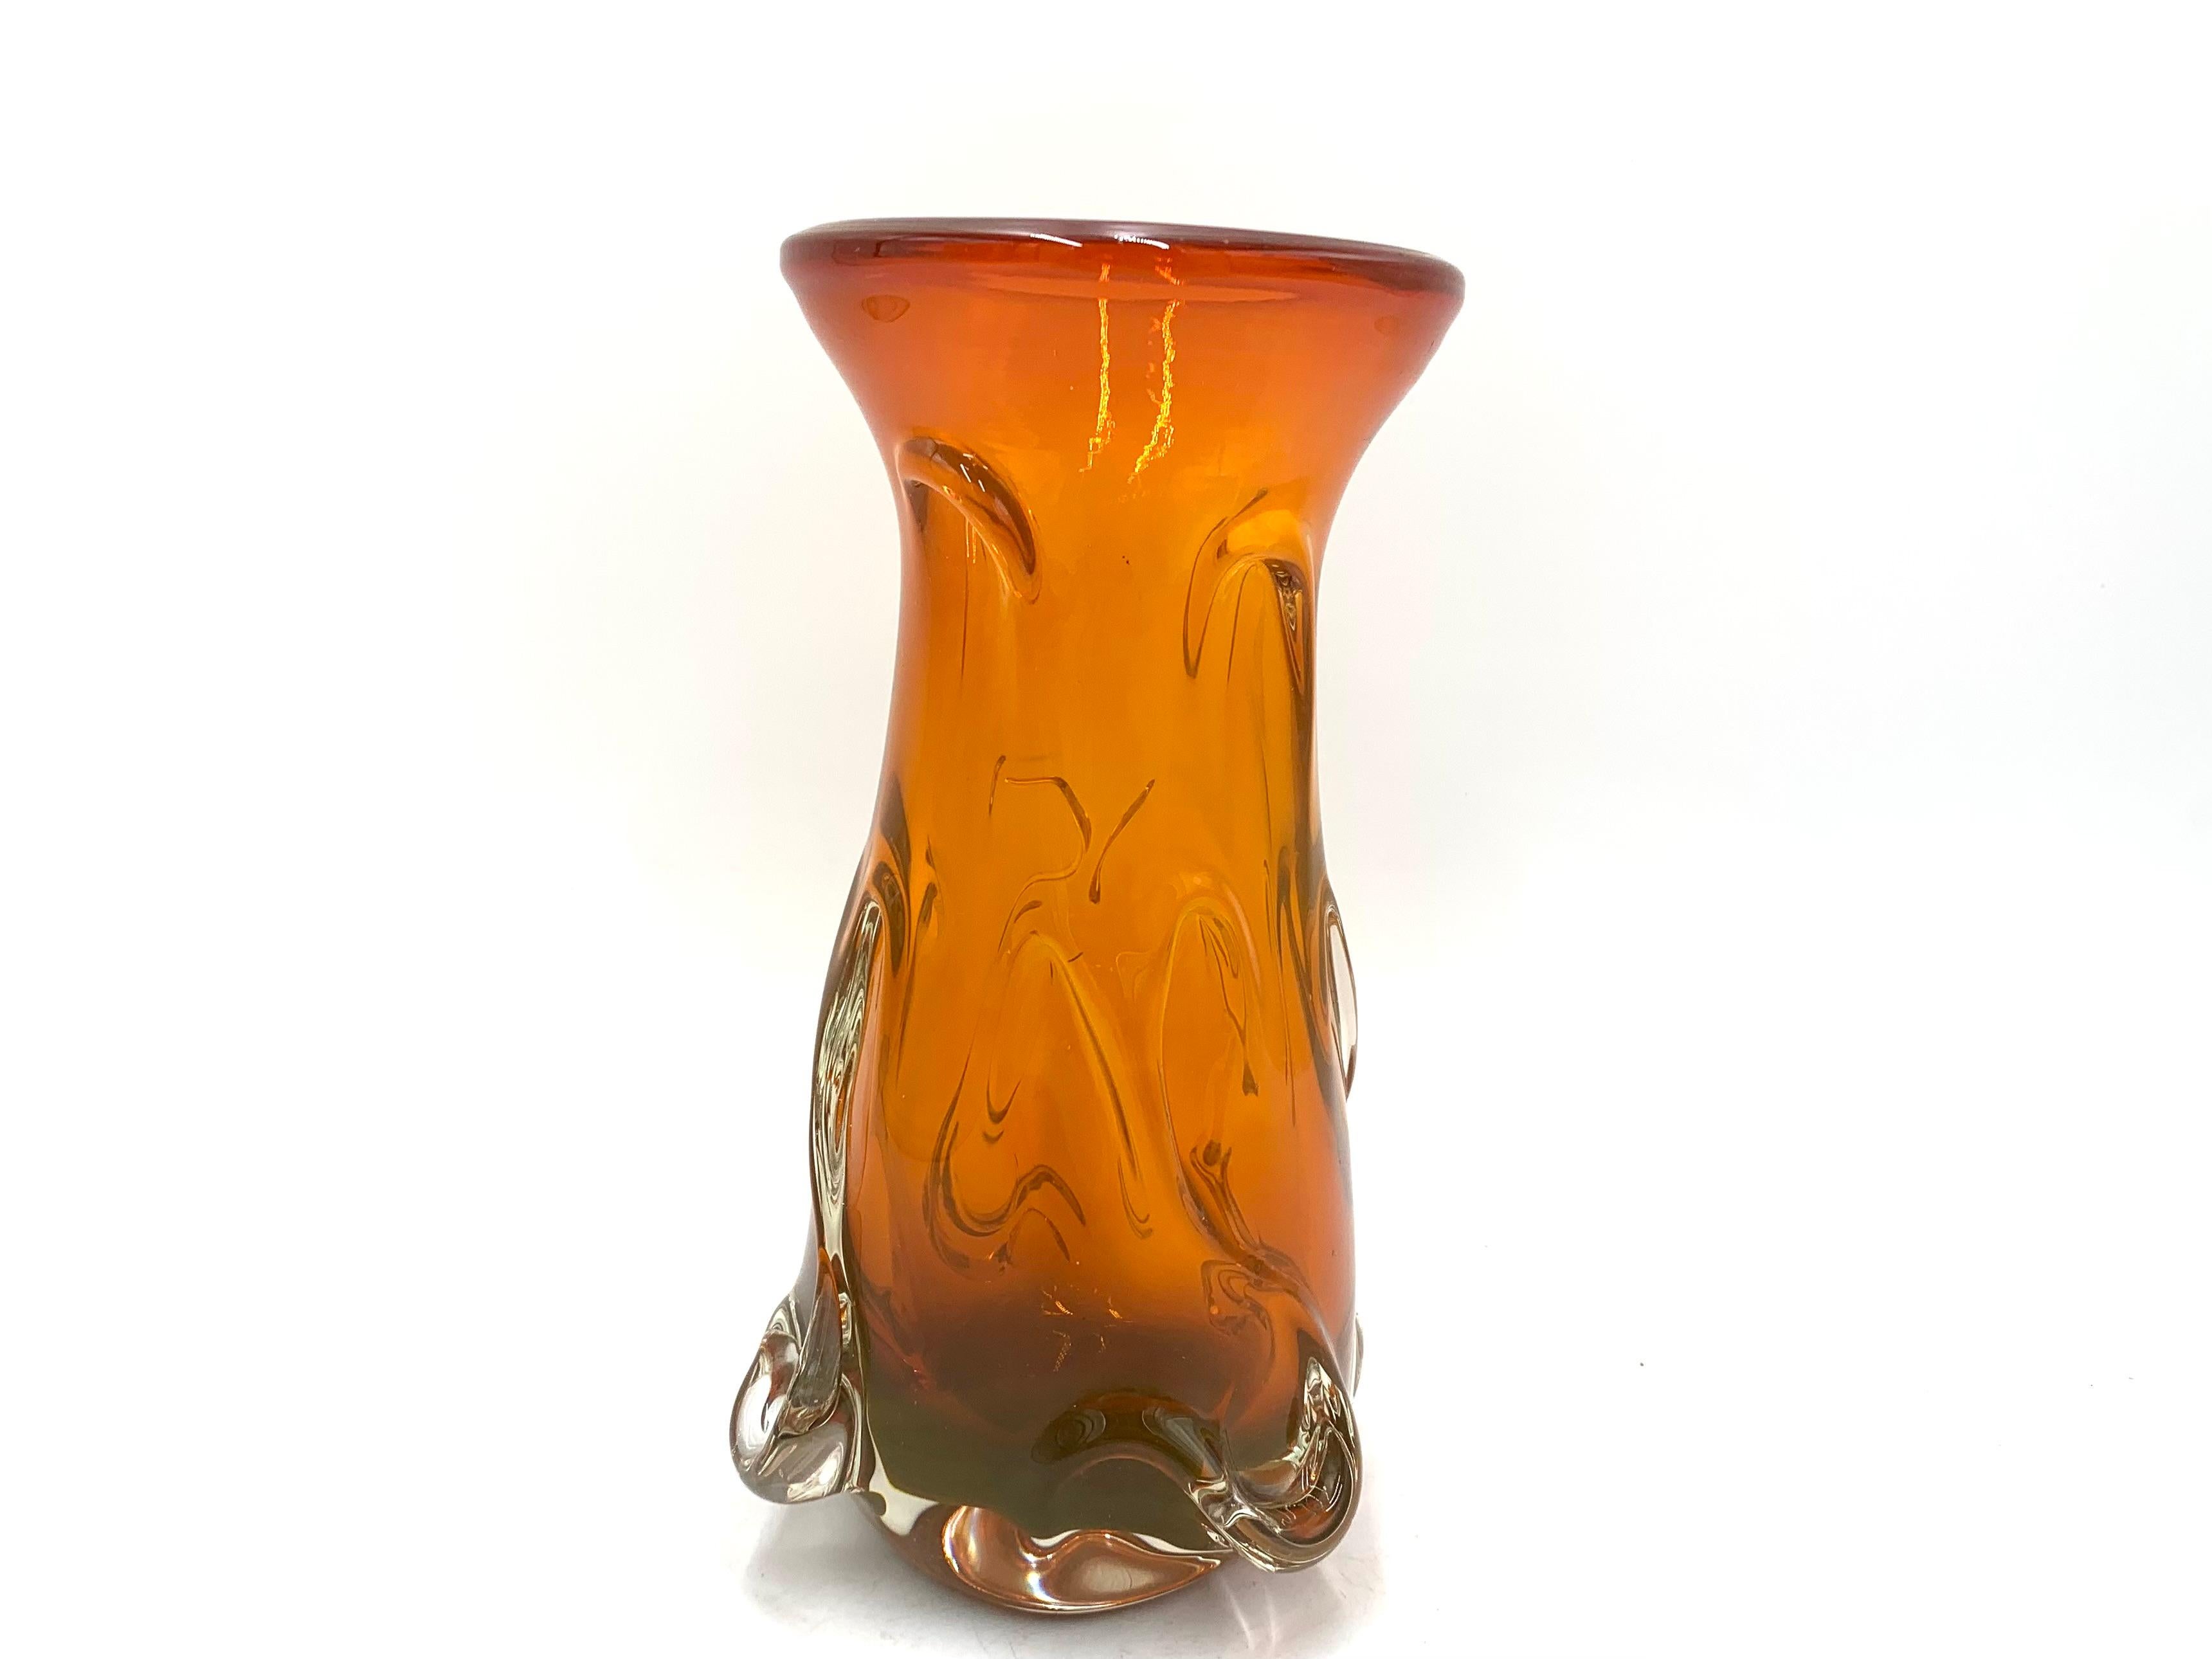 Un vase vintage orange avec une forme intéressante.

Produit en Pologne dans les années 1960 / 1970.

Très bon état.

Dimensions : hauteur 21,5 cm, diamètre 12 cm.